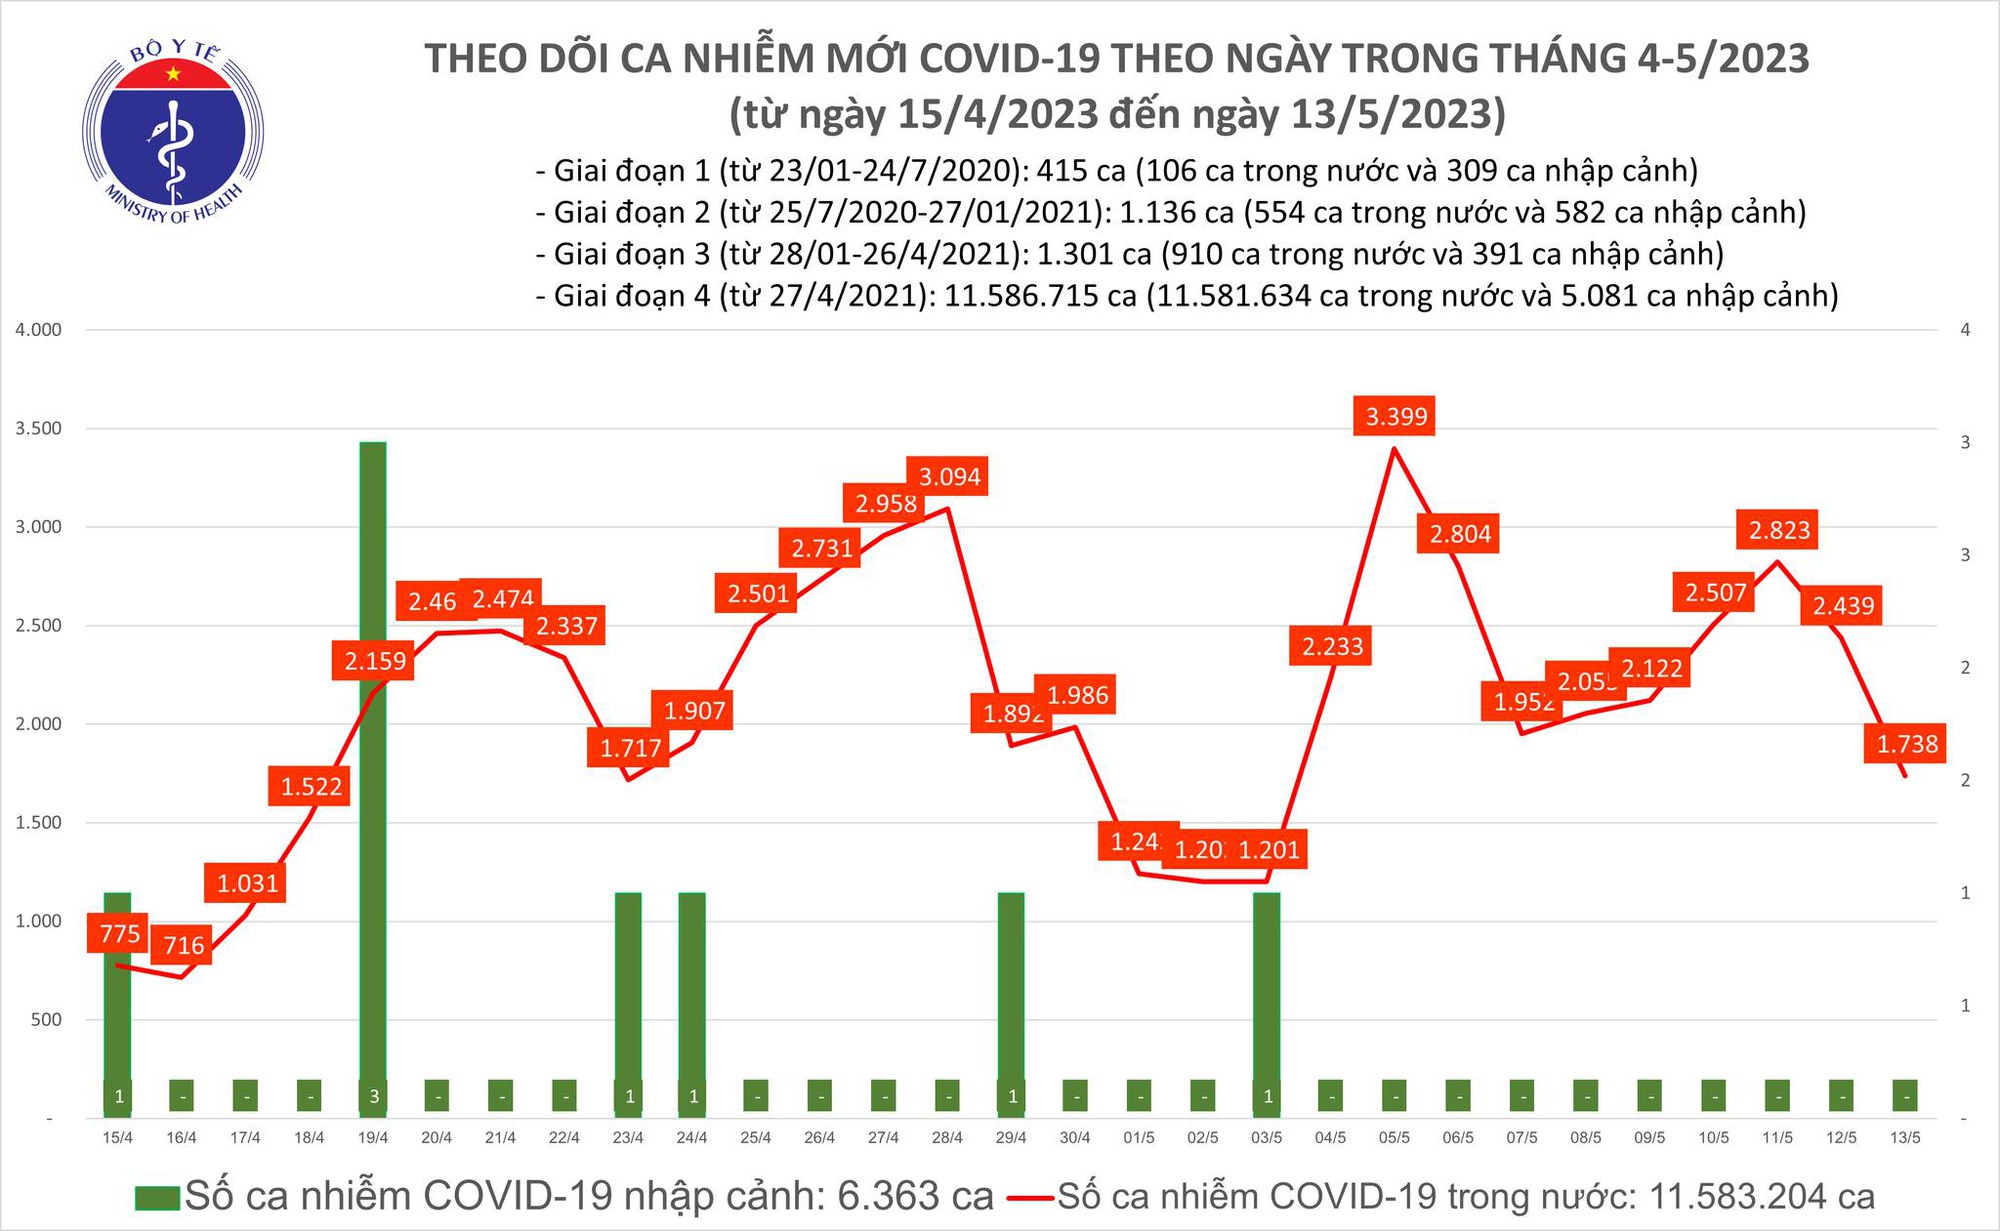 Tin COVID hôm nay tối 13/5: Có 1.738 ca COVID-19 mới trong 24h qua - Ảnh 1.